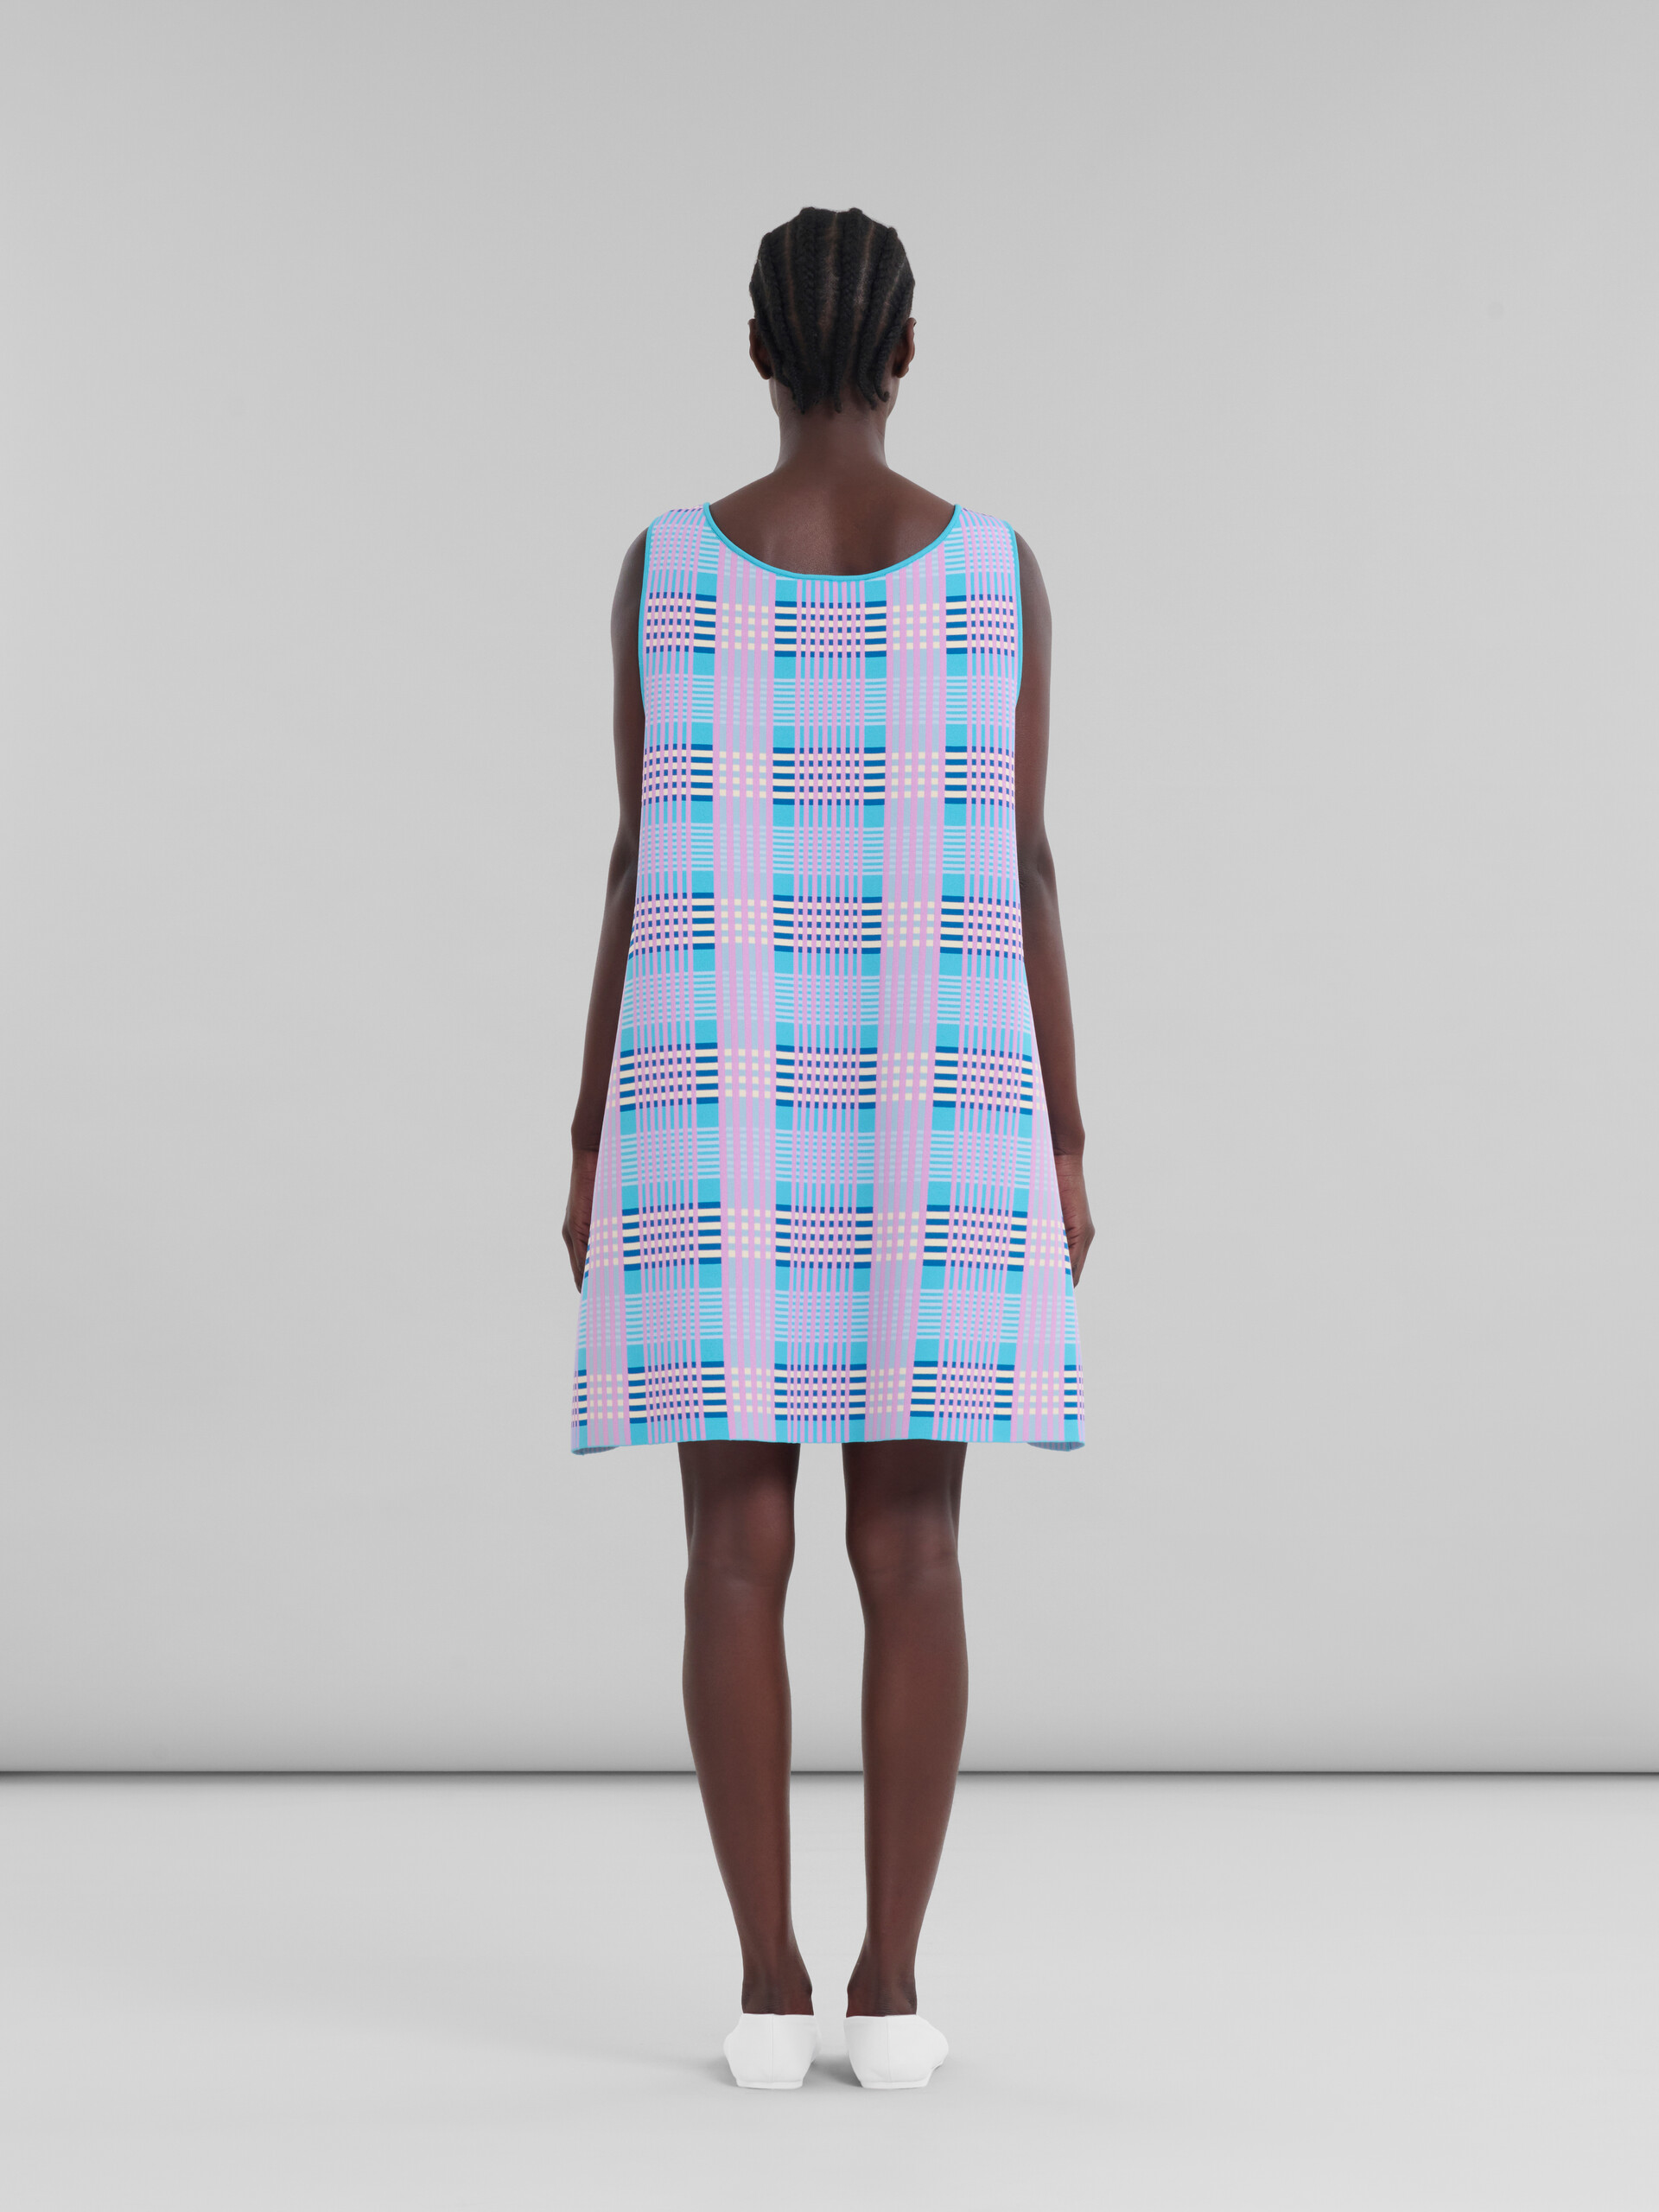 Rosa-blau kariertes A-Linien-Kleid aus technischem Strick - Kleider - Image 3